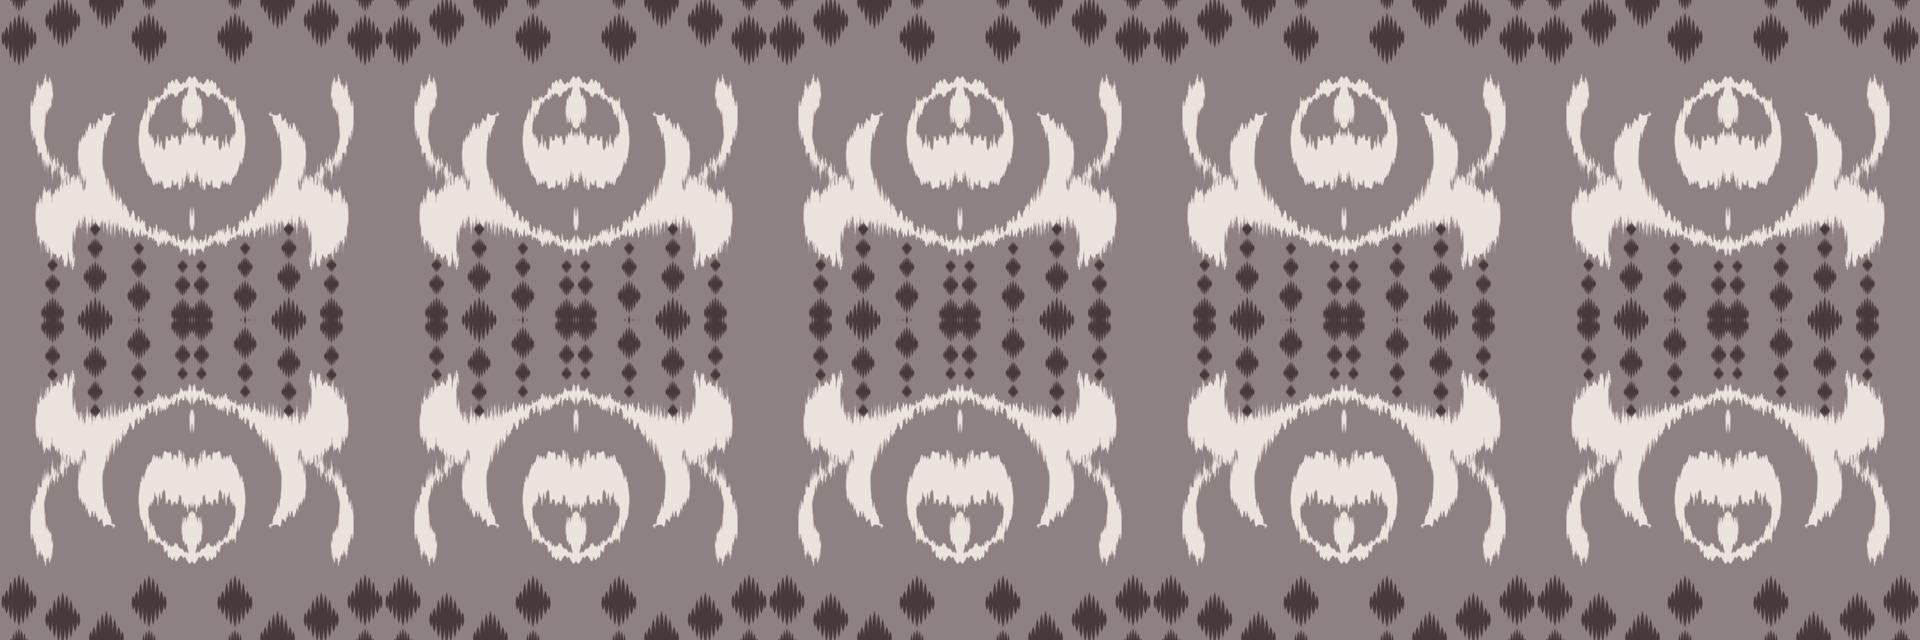 motivo têxtil batik ikat impressão sem costura padrão design de vetor digital para impressão saree kurti borneo tecido borda pincel símbolos amostras algodão